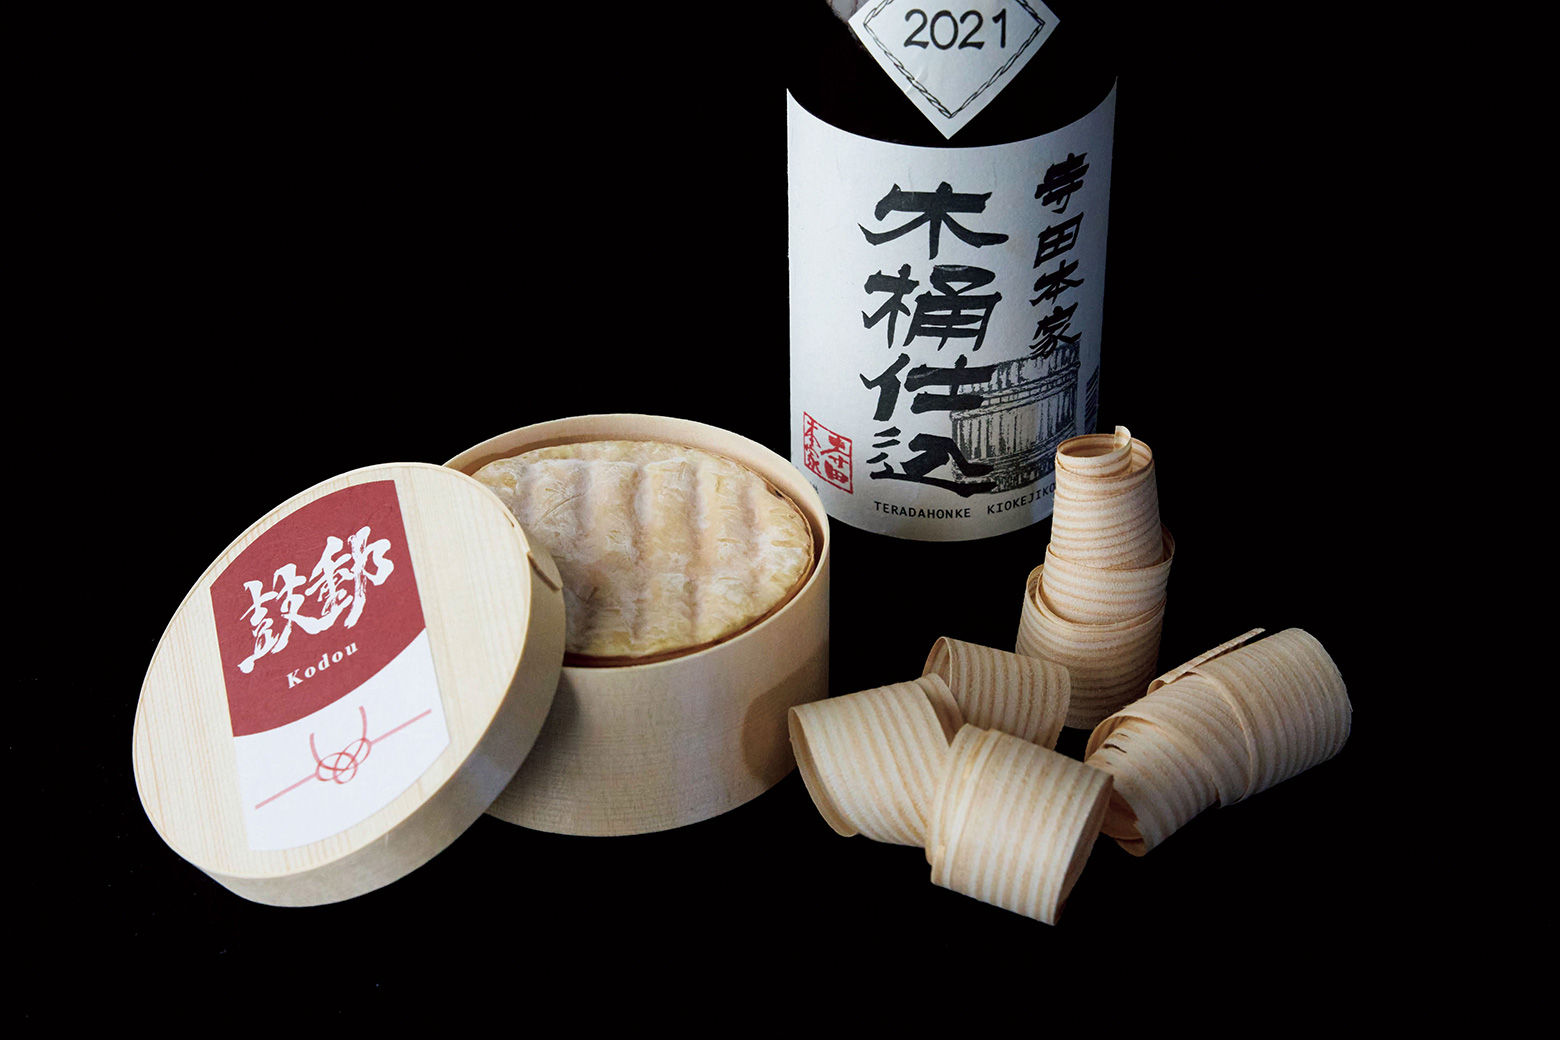 地元の日本酒で磨いたチーズ『鼓動 Kodou』がフランスの「MONDIAL du FROMAGE 2023」でBRONZE賞を受賞。